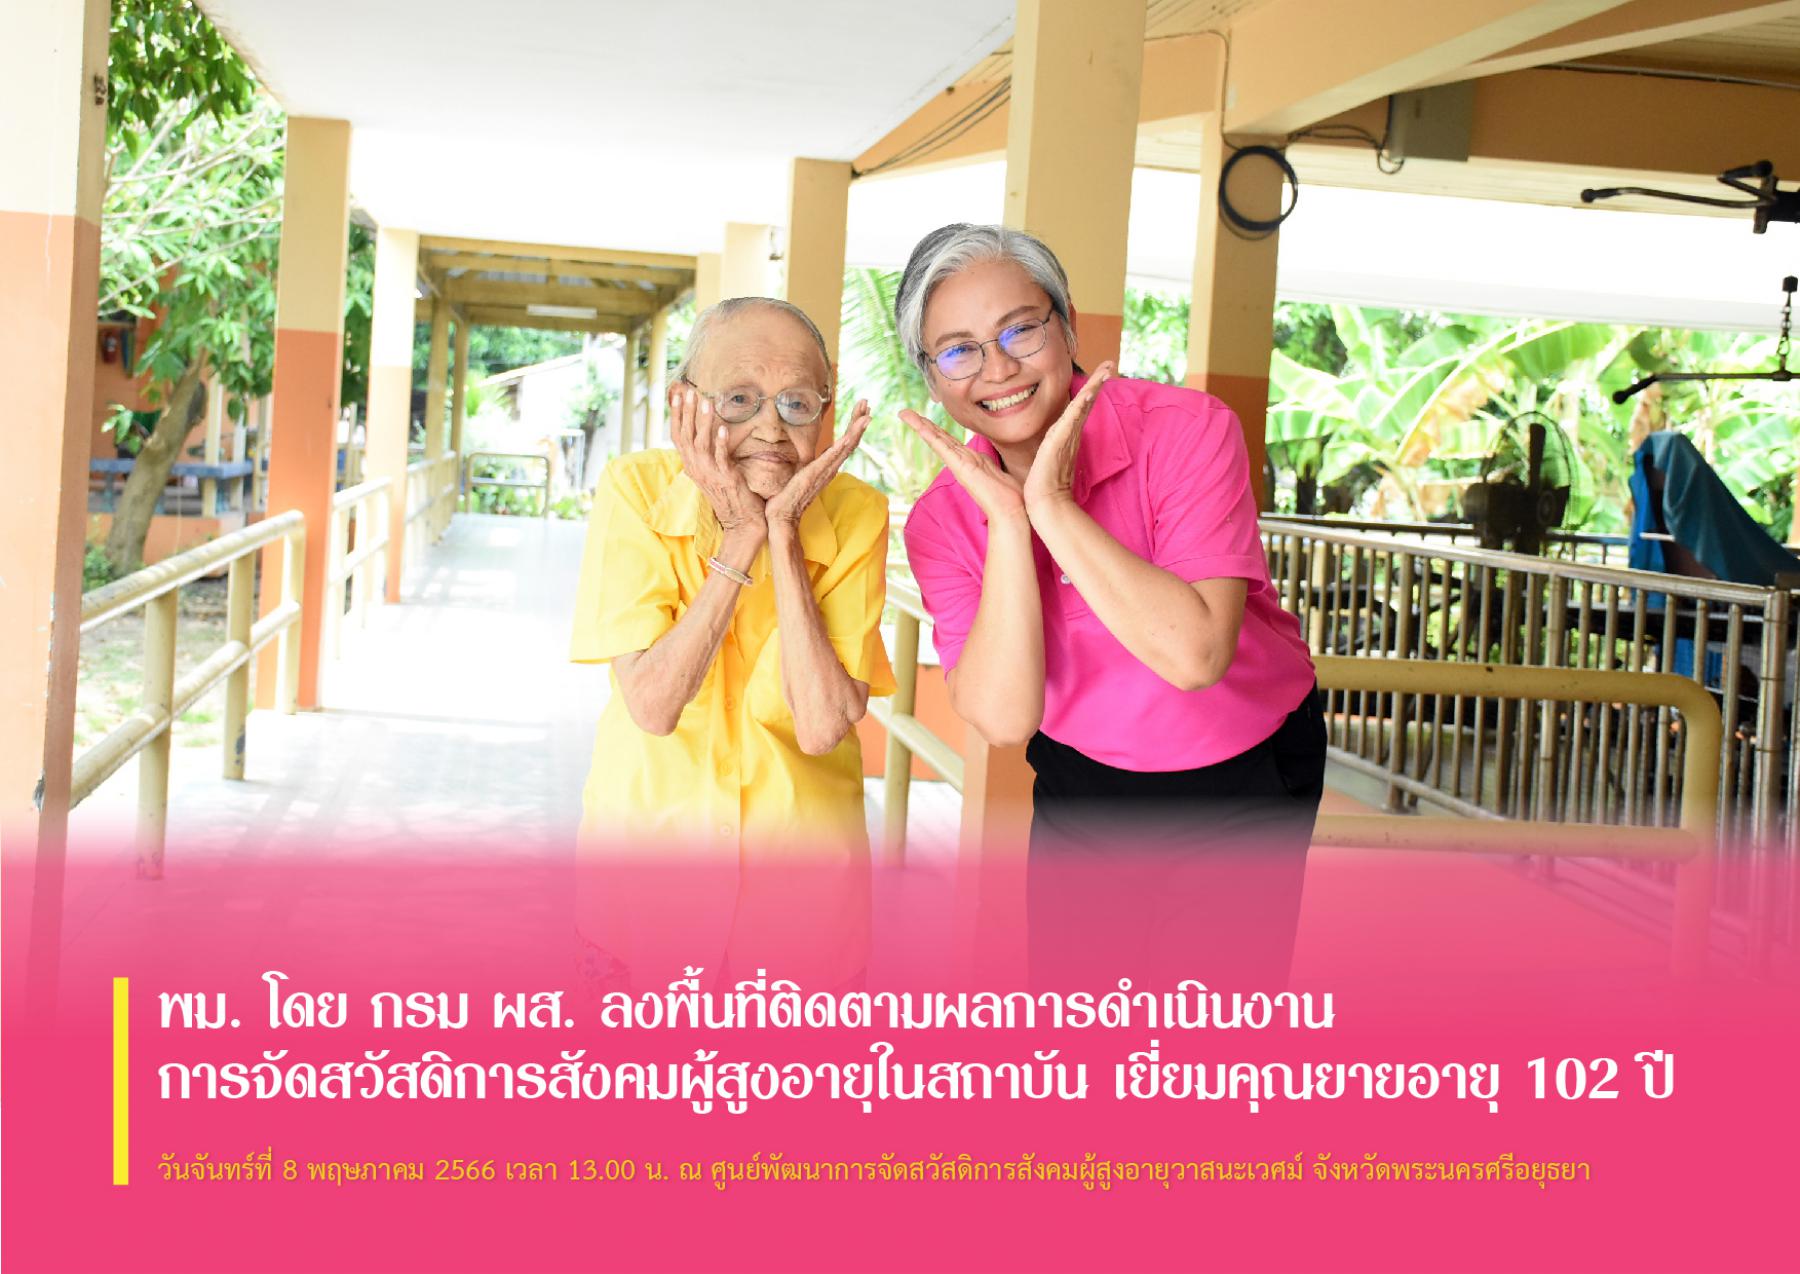 พม. โดย กรม ผส. ลงพื้นที่ติดตามผลการดำเนินงานการจัดสวัสดิการสังคมผู้สูงอายุในสถาบัน เยี่ยมคุณยายอายุ 102 ปี